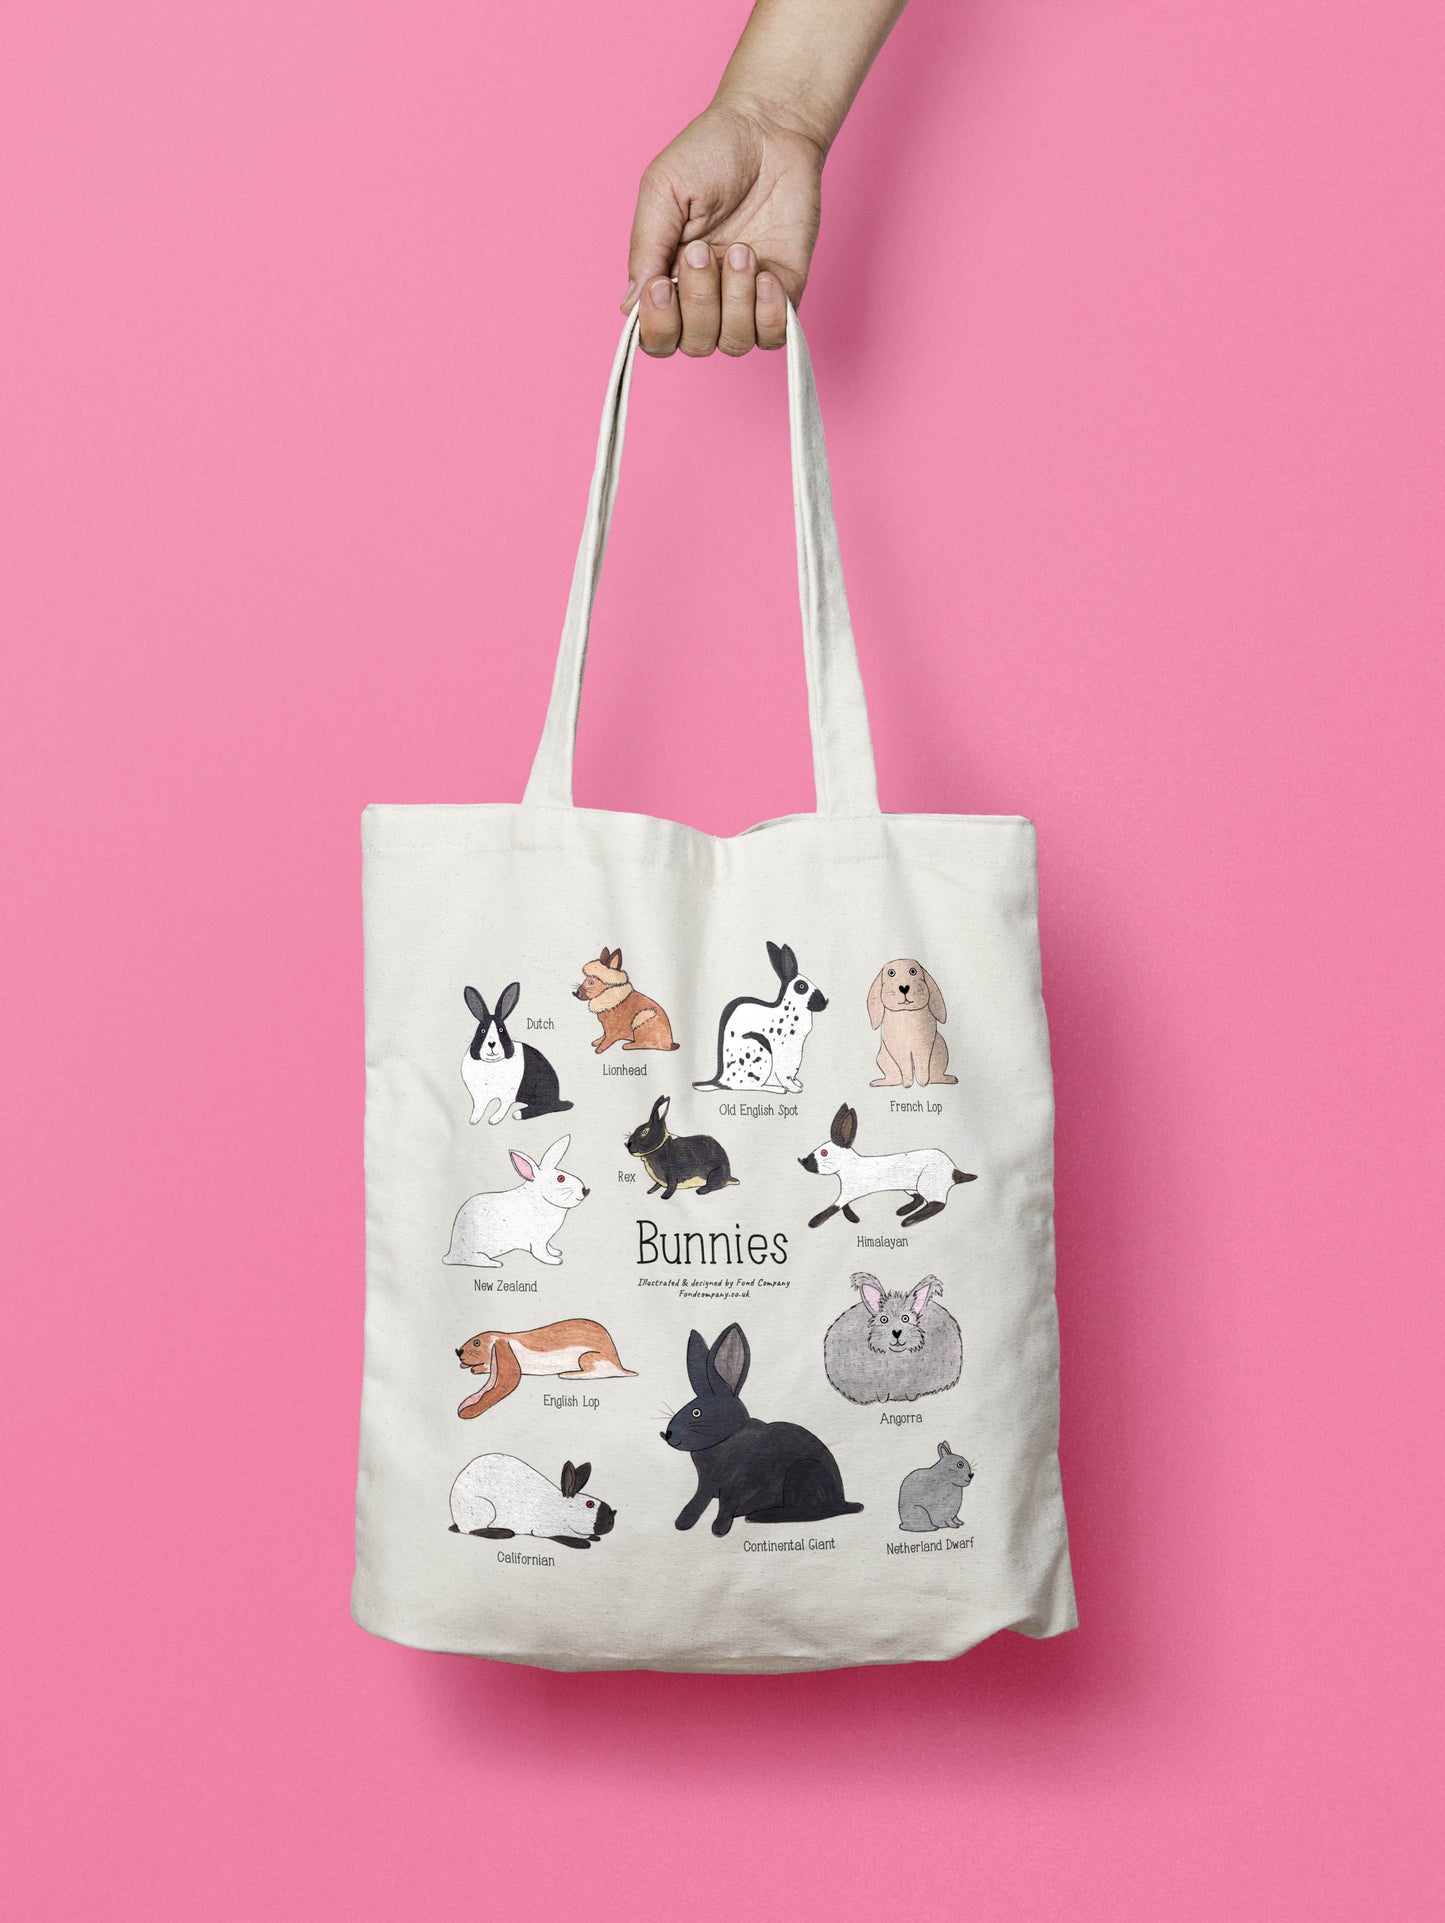 Bunnies tote bag - illustrated rabbit tote bag